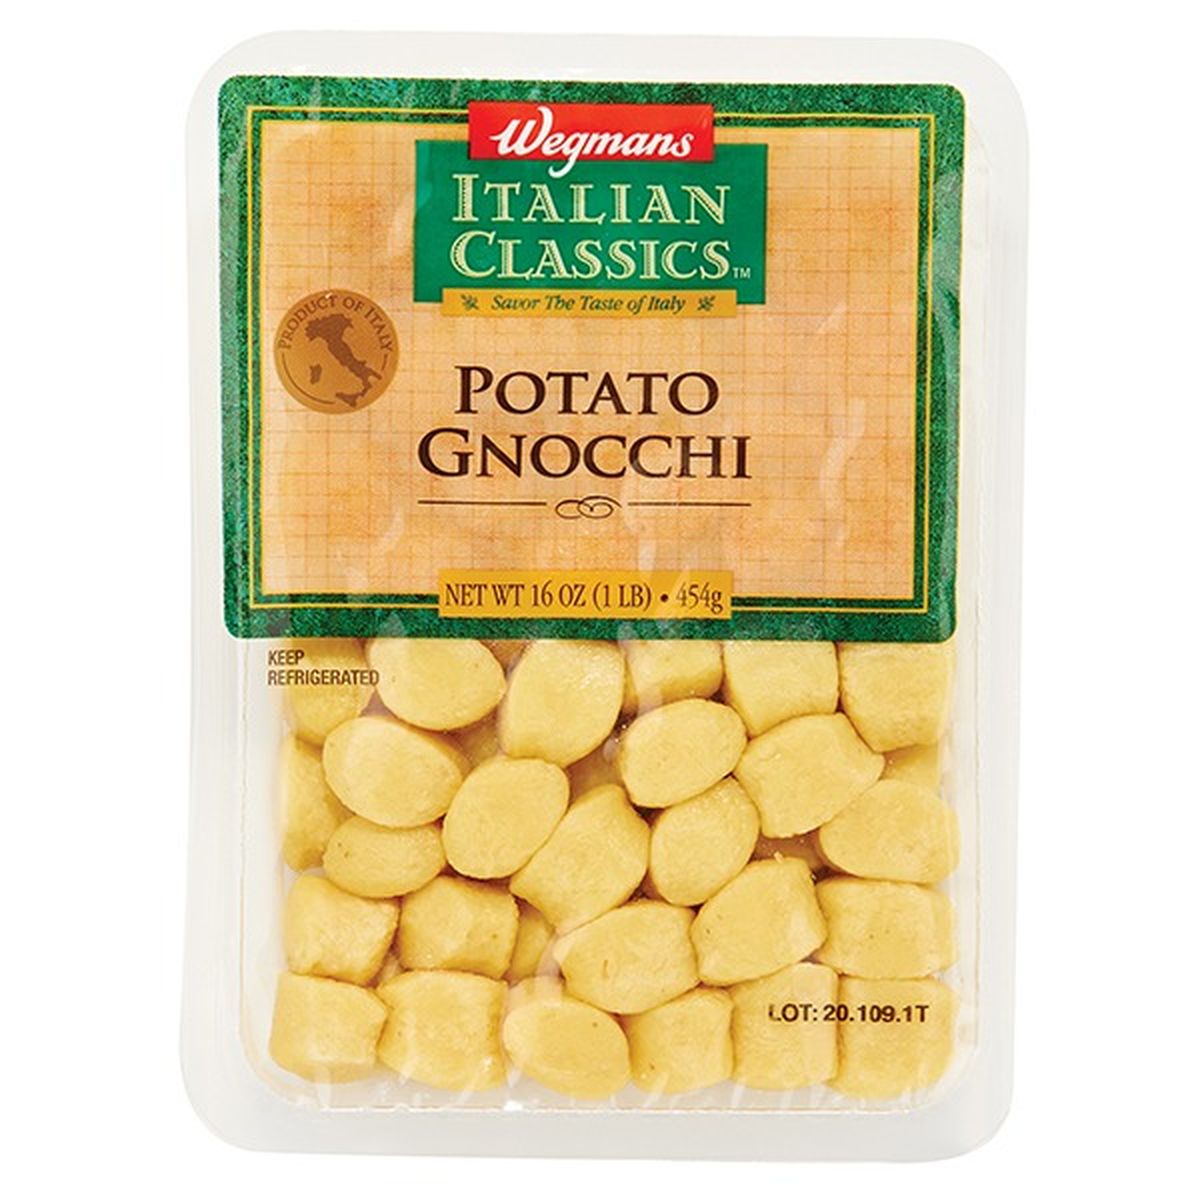 Calories in Wegmans Italian Classics Pasta, Gnocchi, Potato